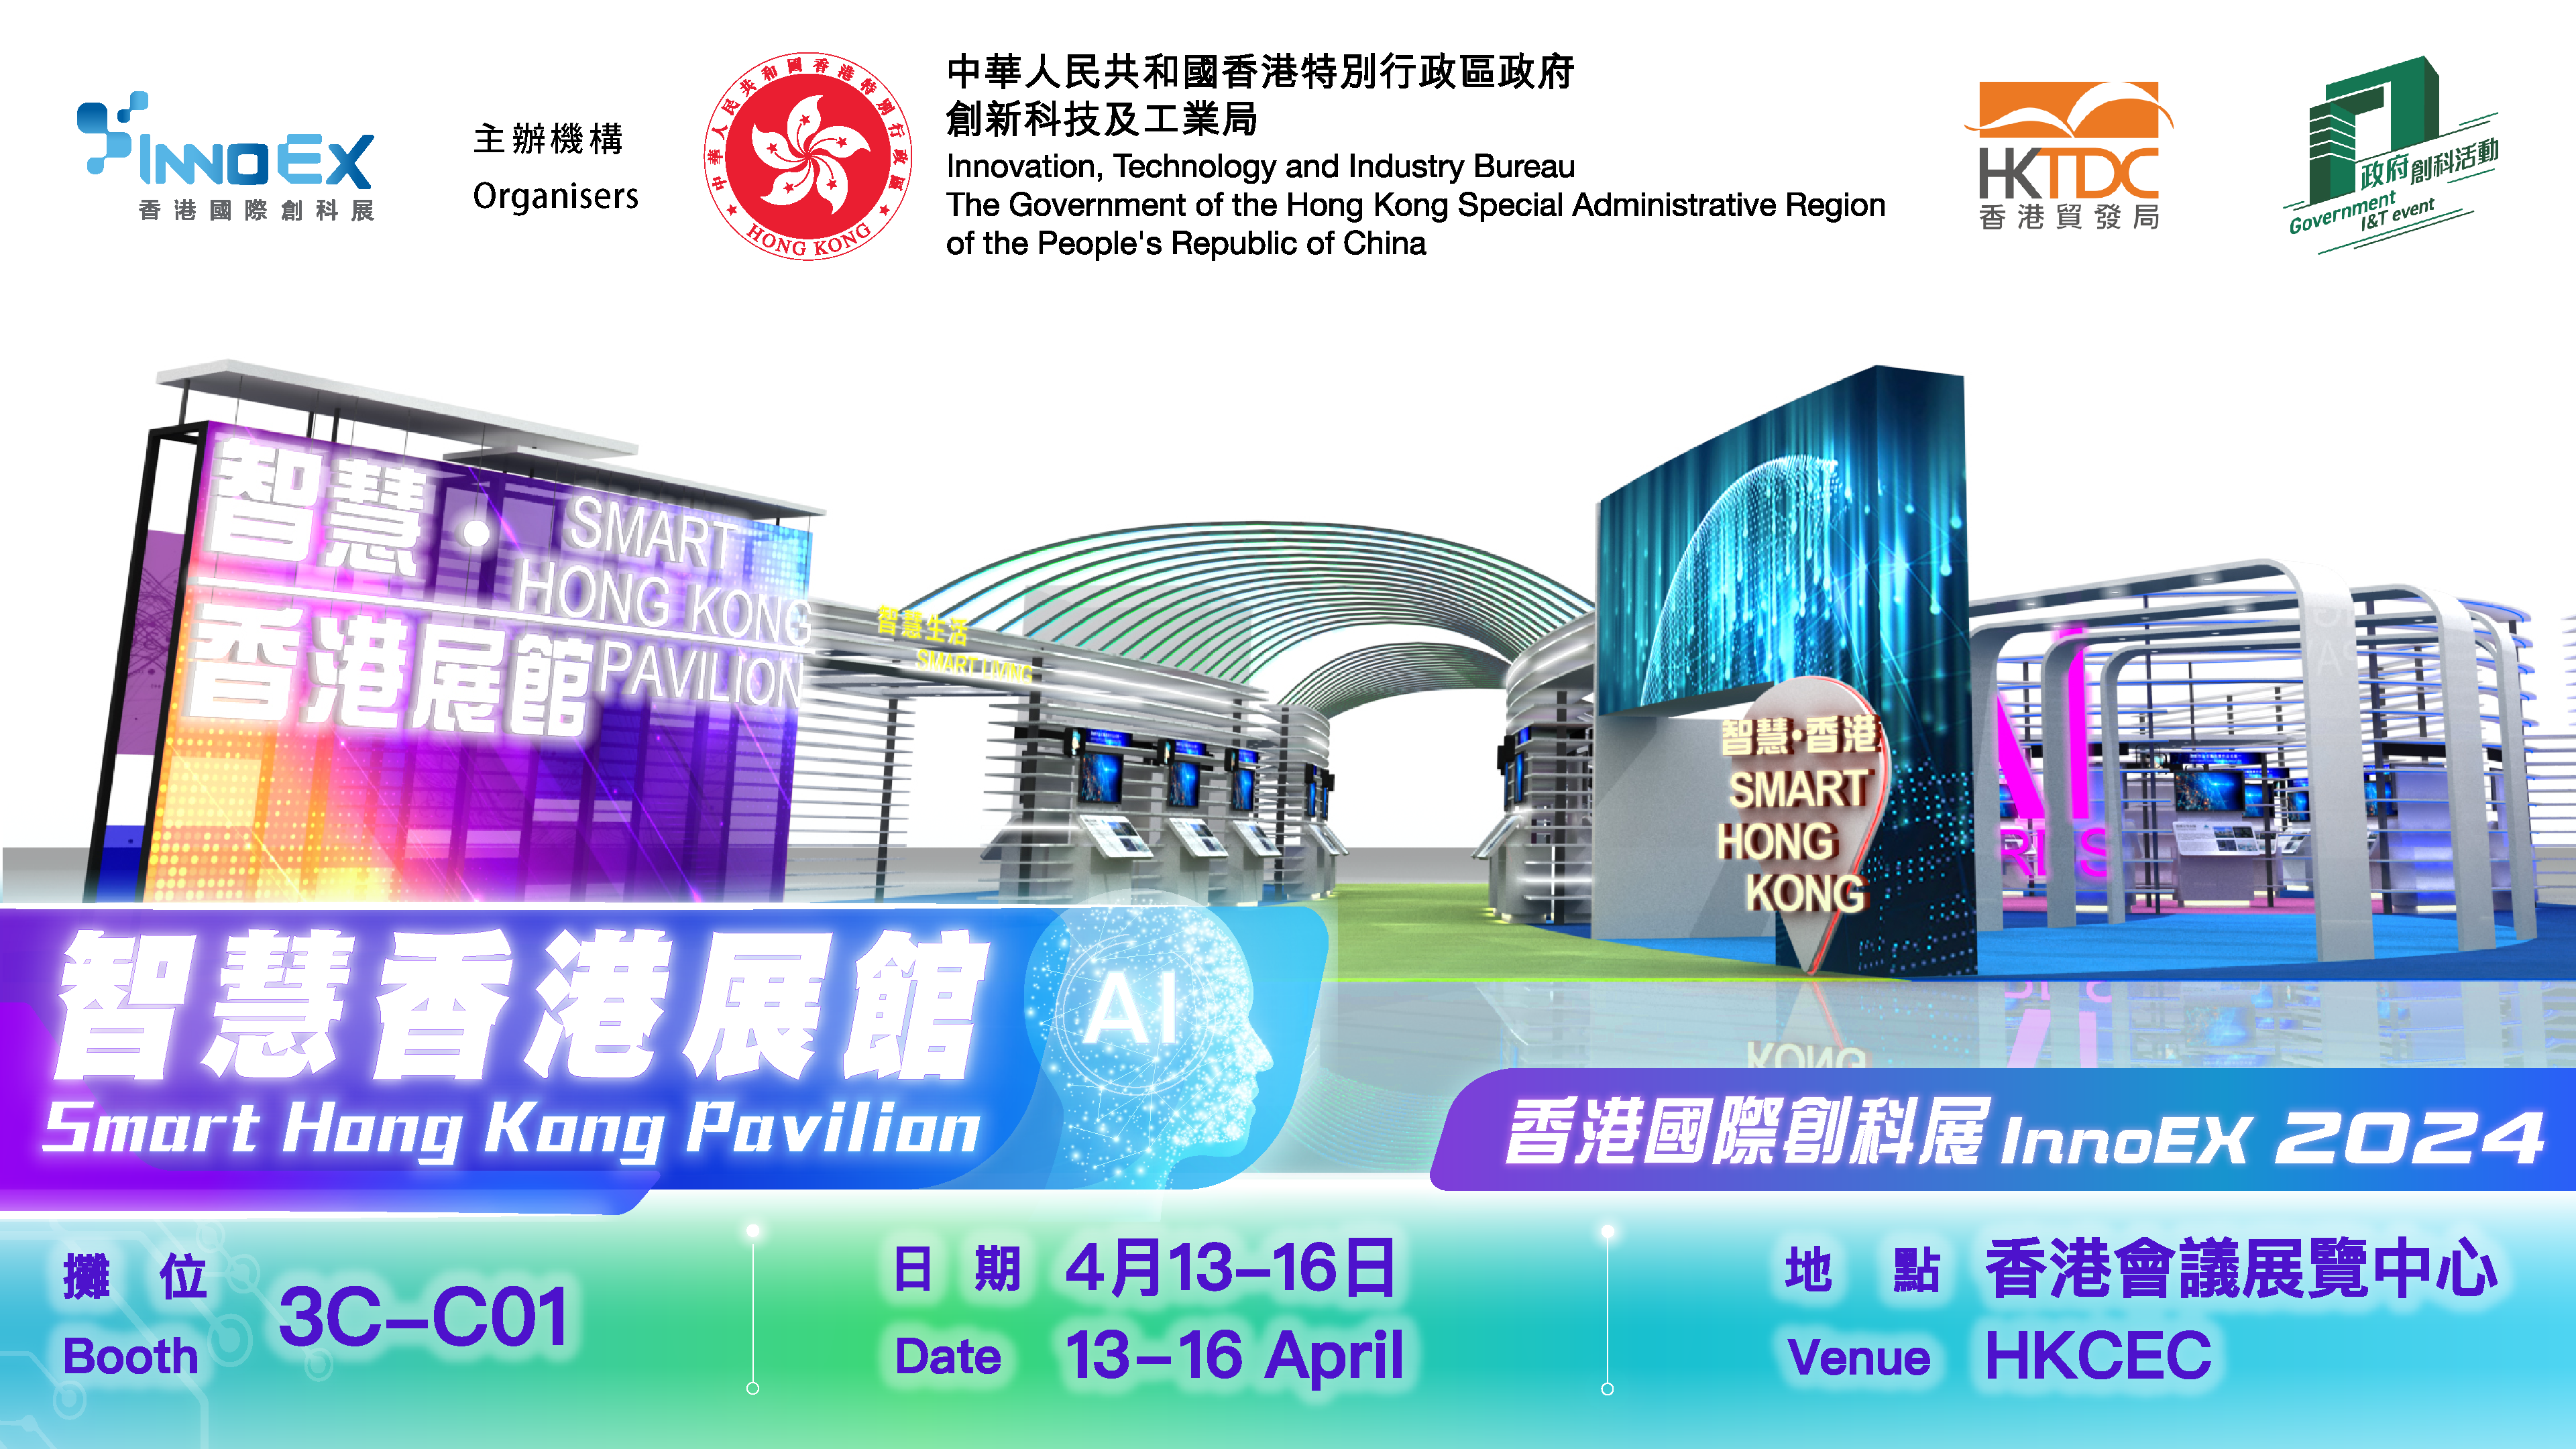 Smart Hong Kong Pavilion at the InnoEX 2024